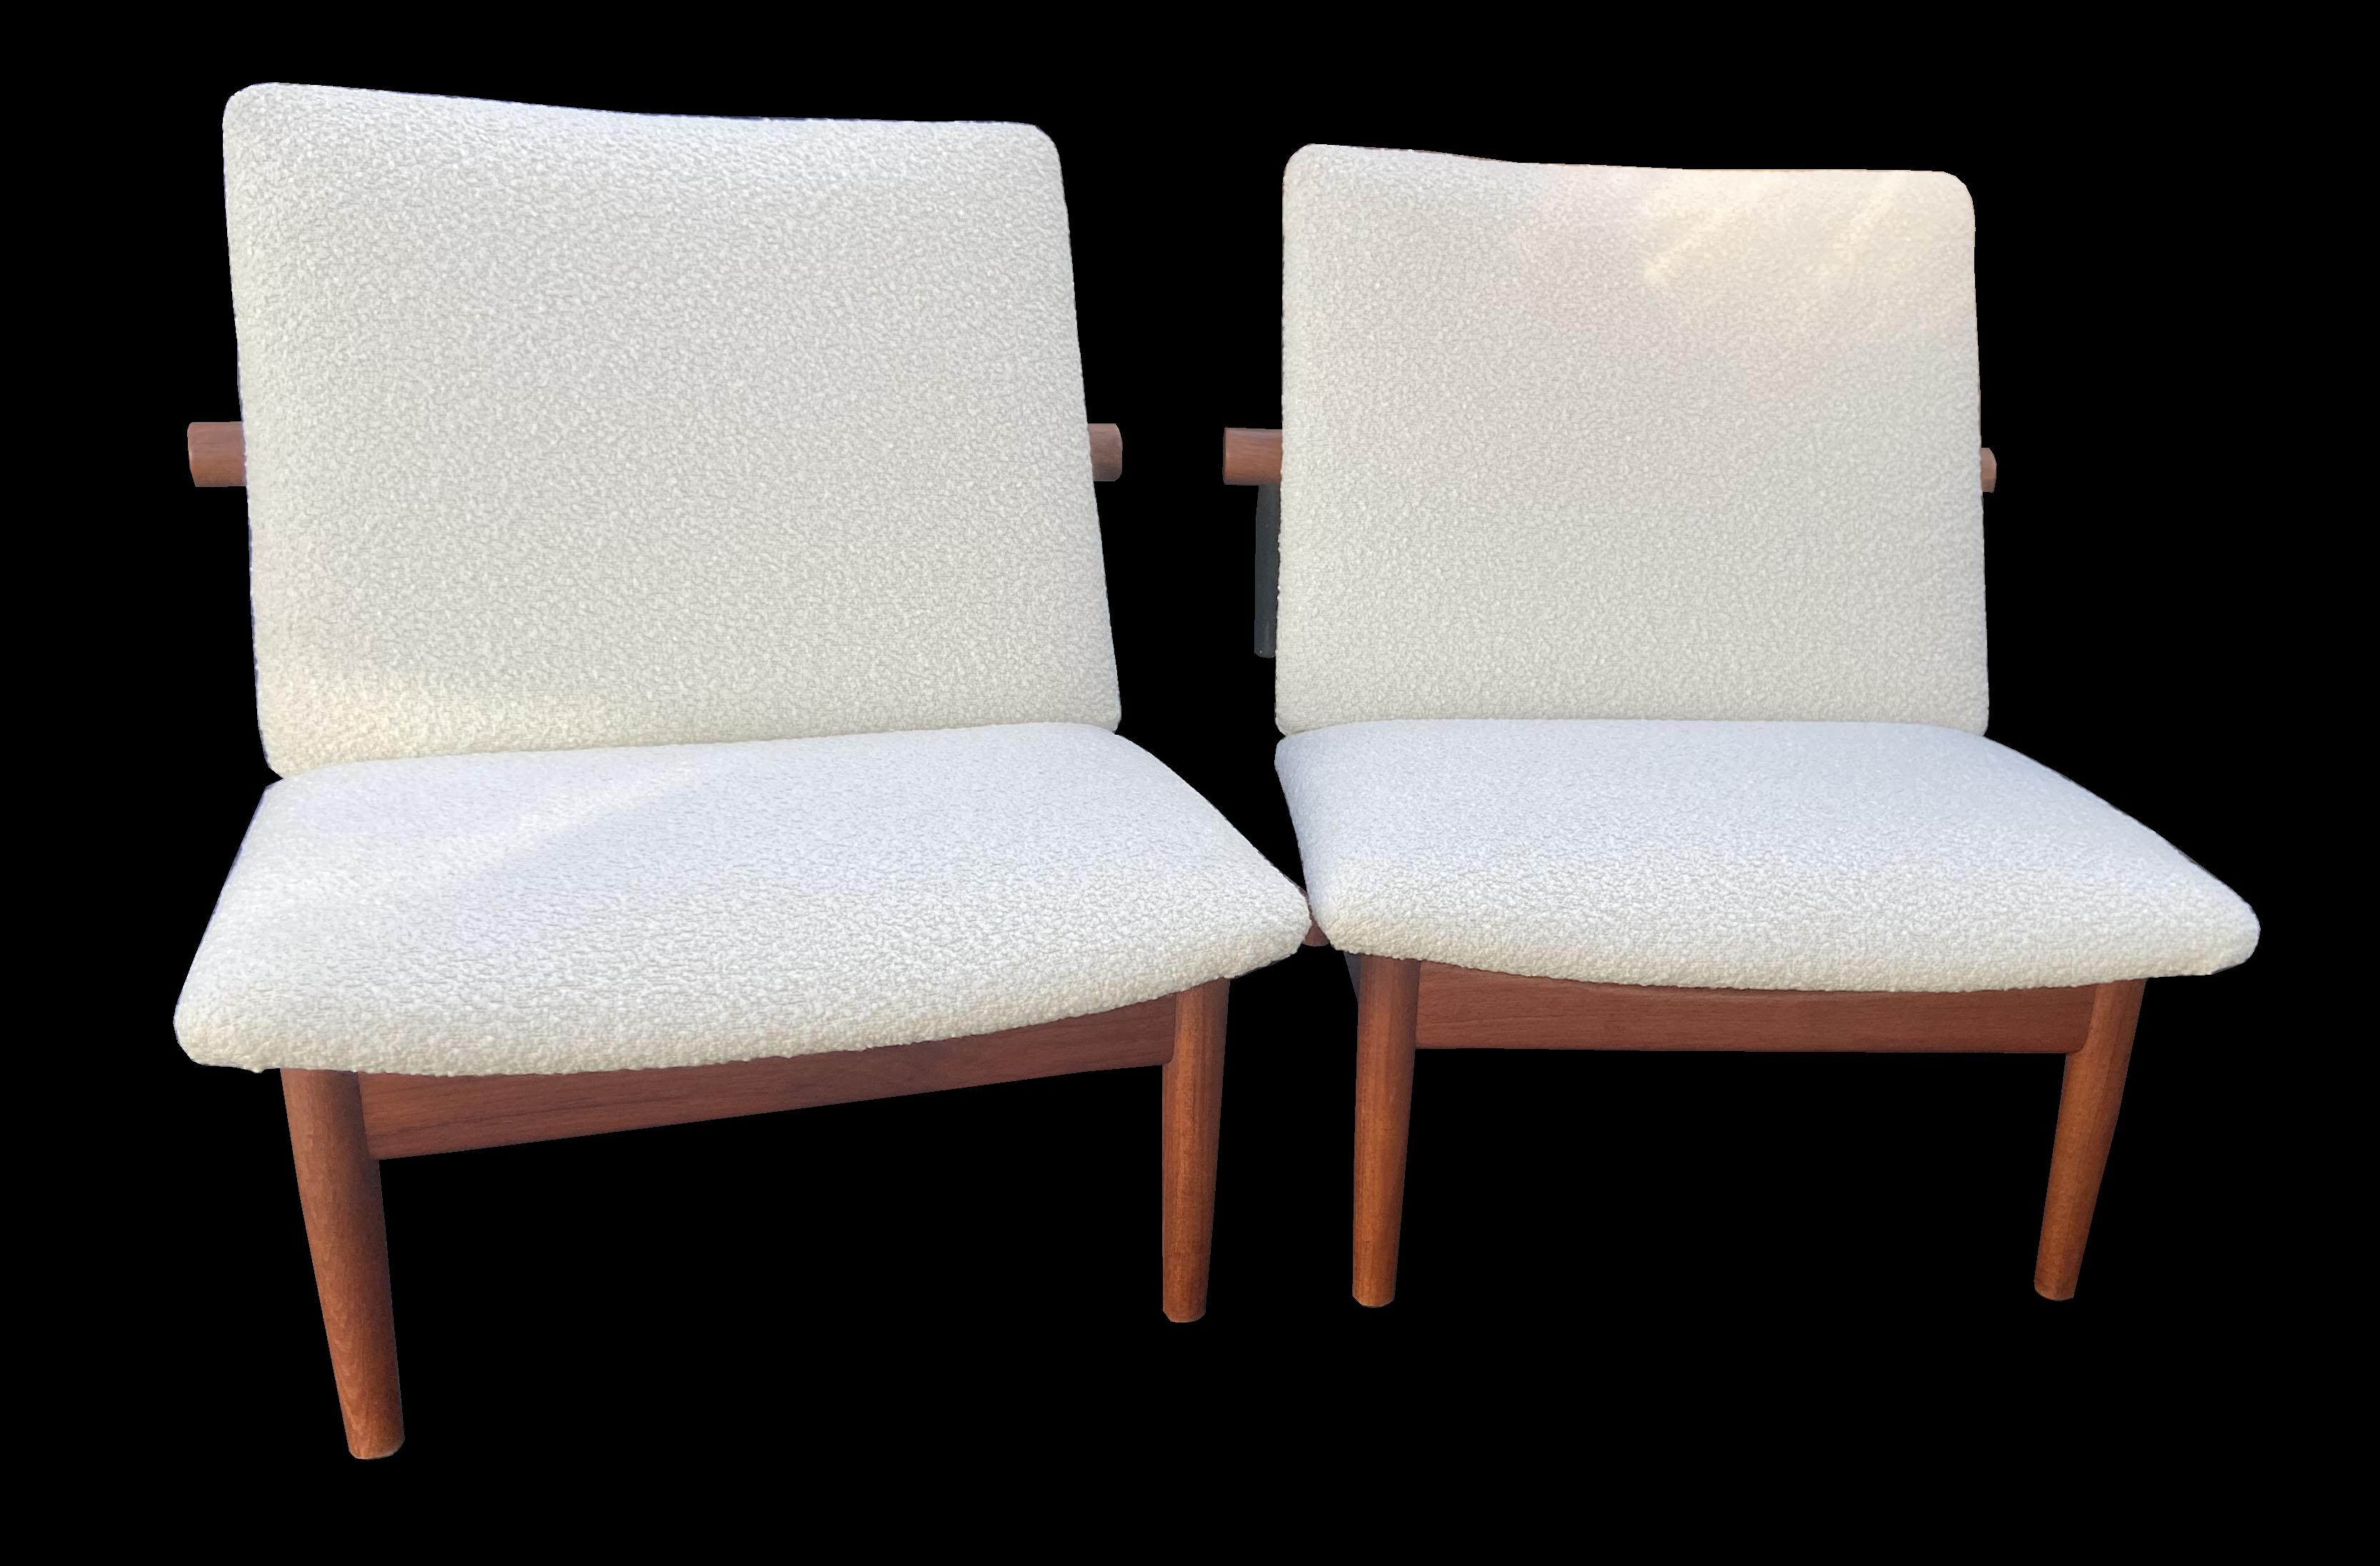 Dies sind schöne, originale Finn Juhl-Stühle aus den frühen 1960er Jahren.
Das ursprünglich in den 1950er Jahren entworfene Paar trägt das France & Son-Metallabzeichen und ist sicherheitshalber auch auf den Rahmen gestempelt, die beide aus massivem